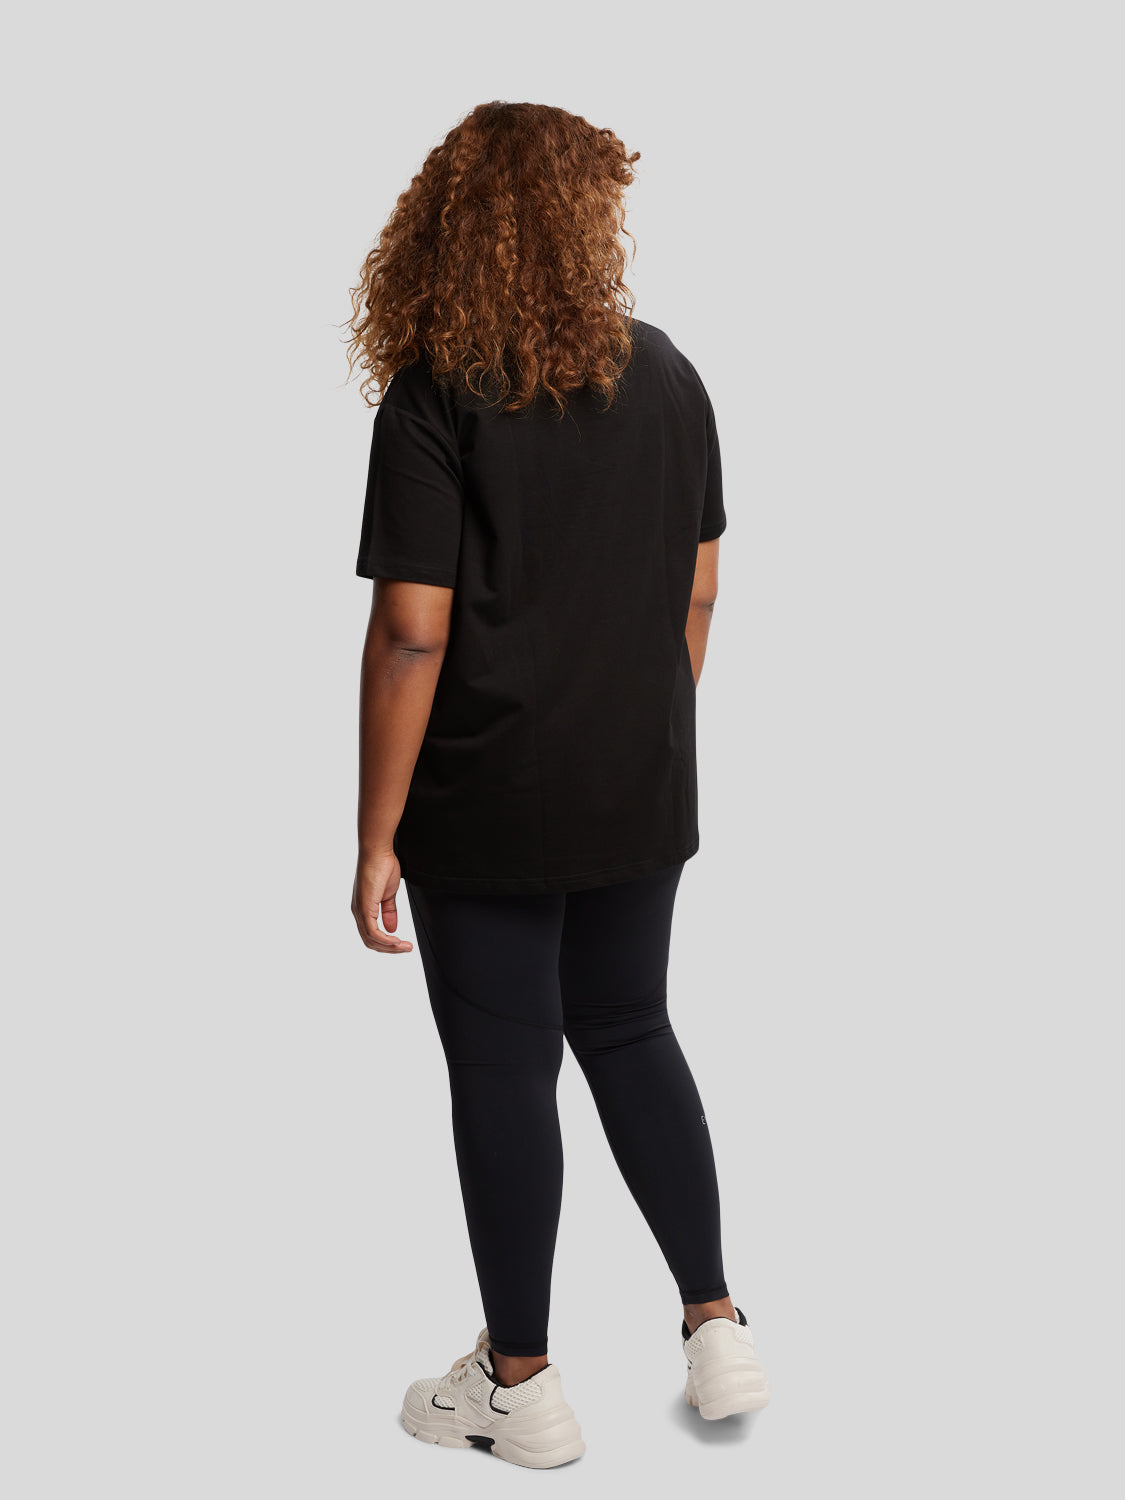 kvinde bagfra med sort oversized t-shirt